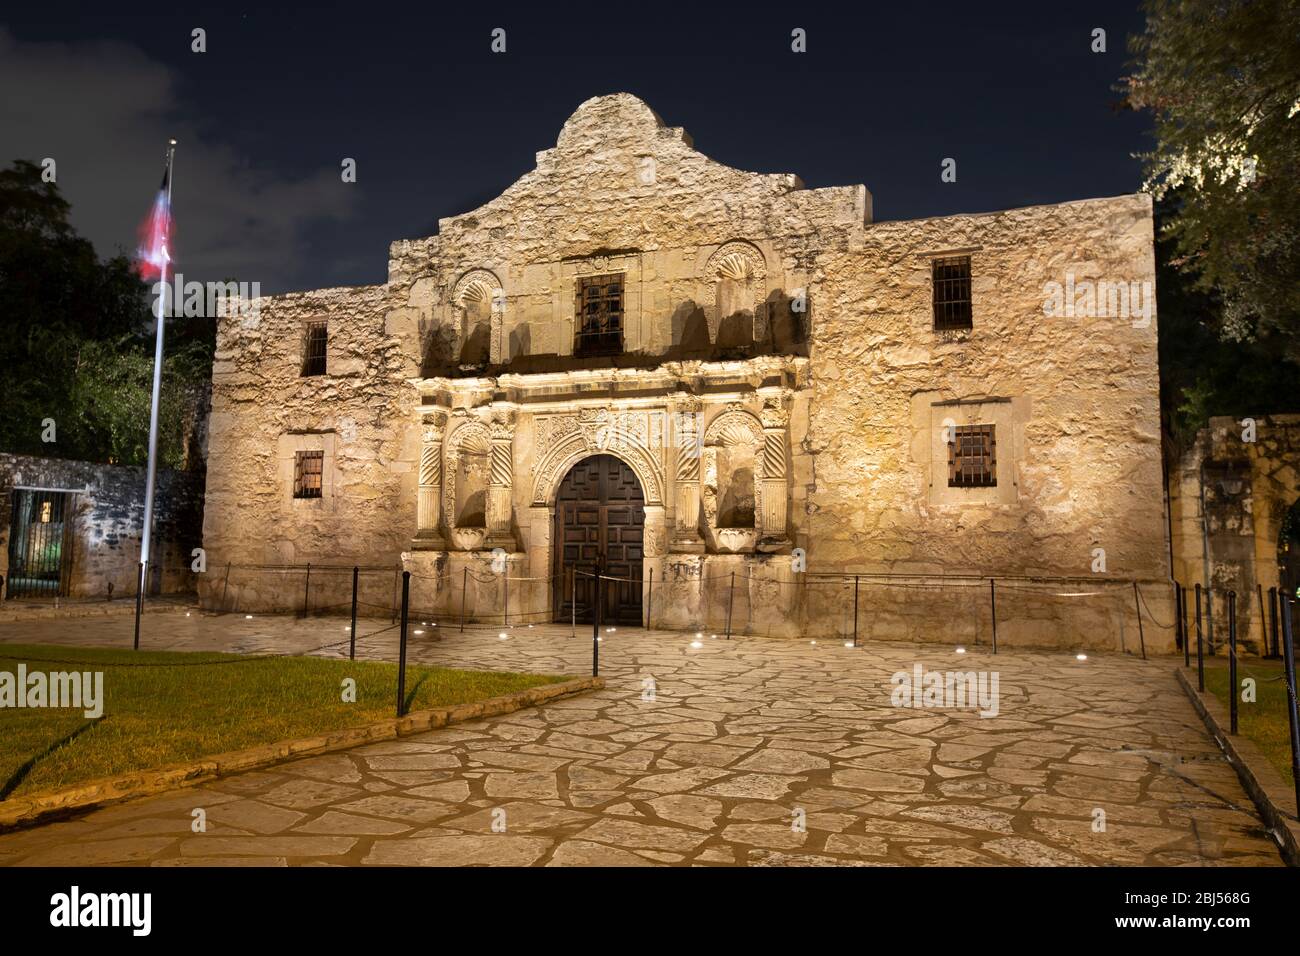 Vue extérieure du fort Alamo mission à San Antonio Texas USA Banque D'Images